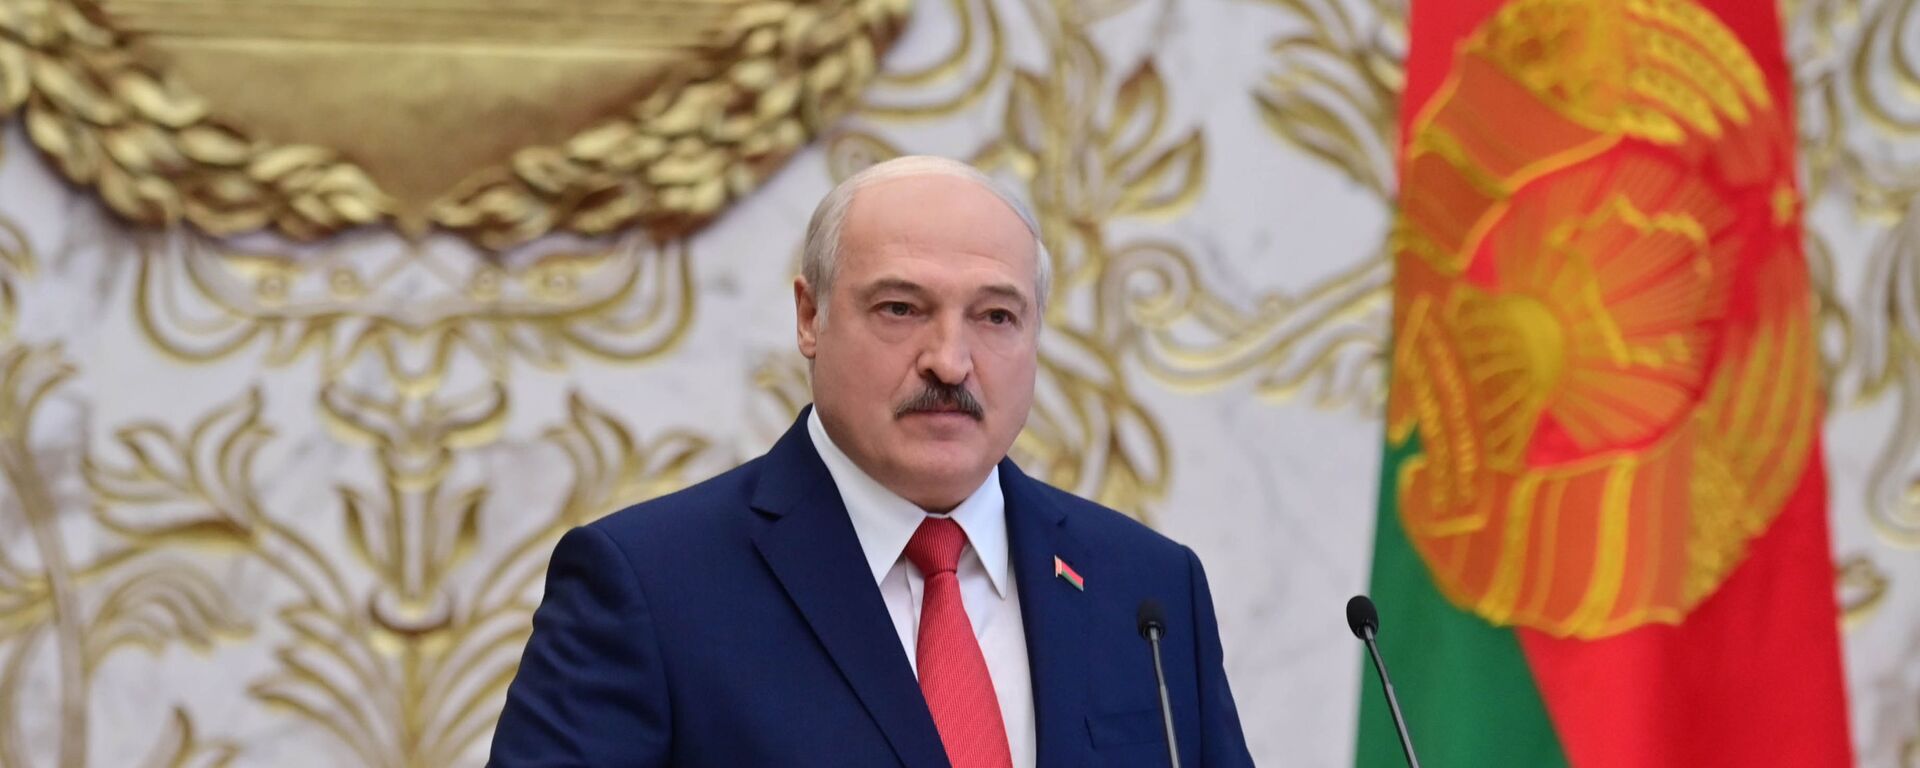 La investidura de Alexandr Lukashenko en Bielorrusia - Sputnik Mundo, 1920, 08.02.2022